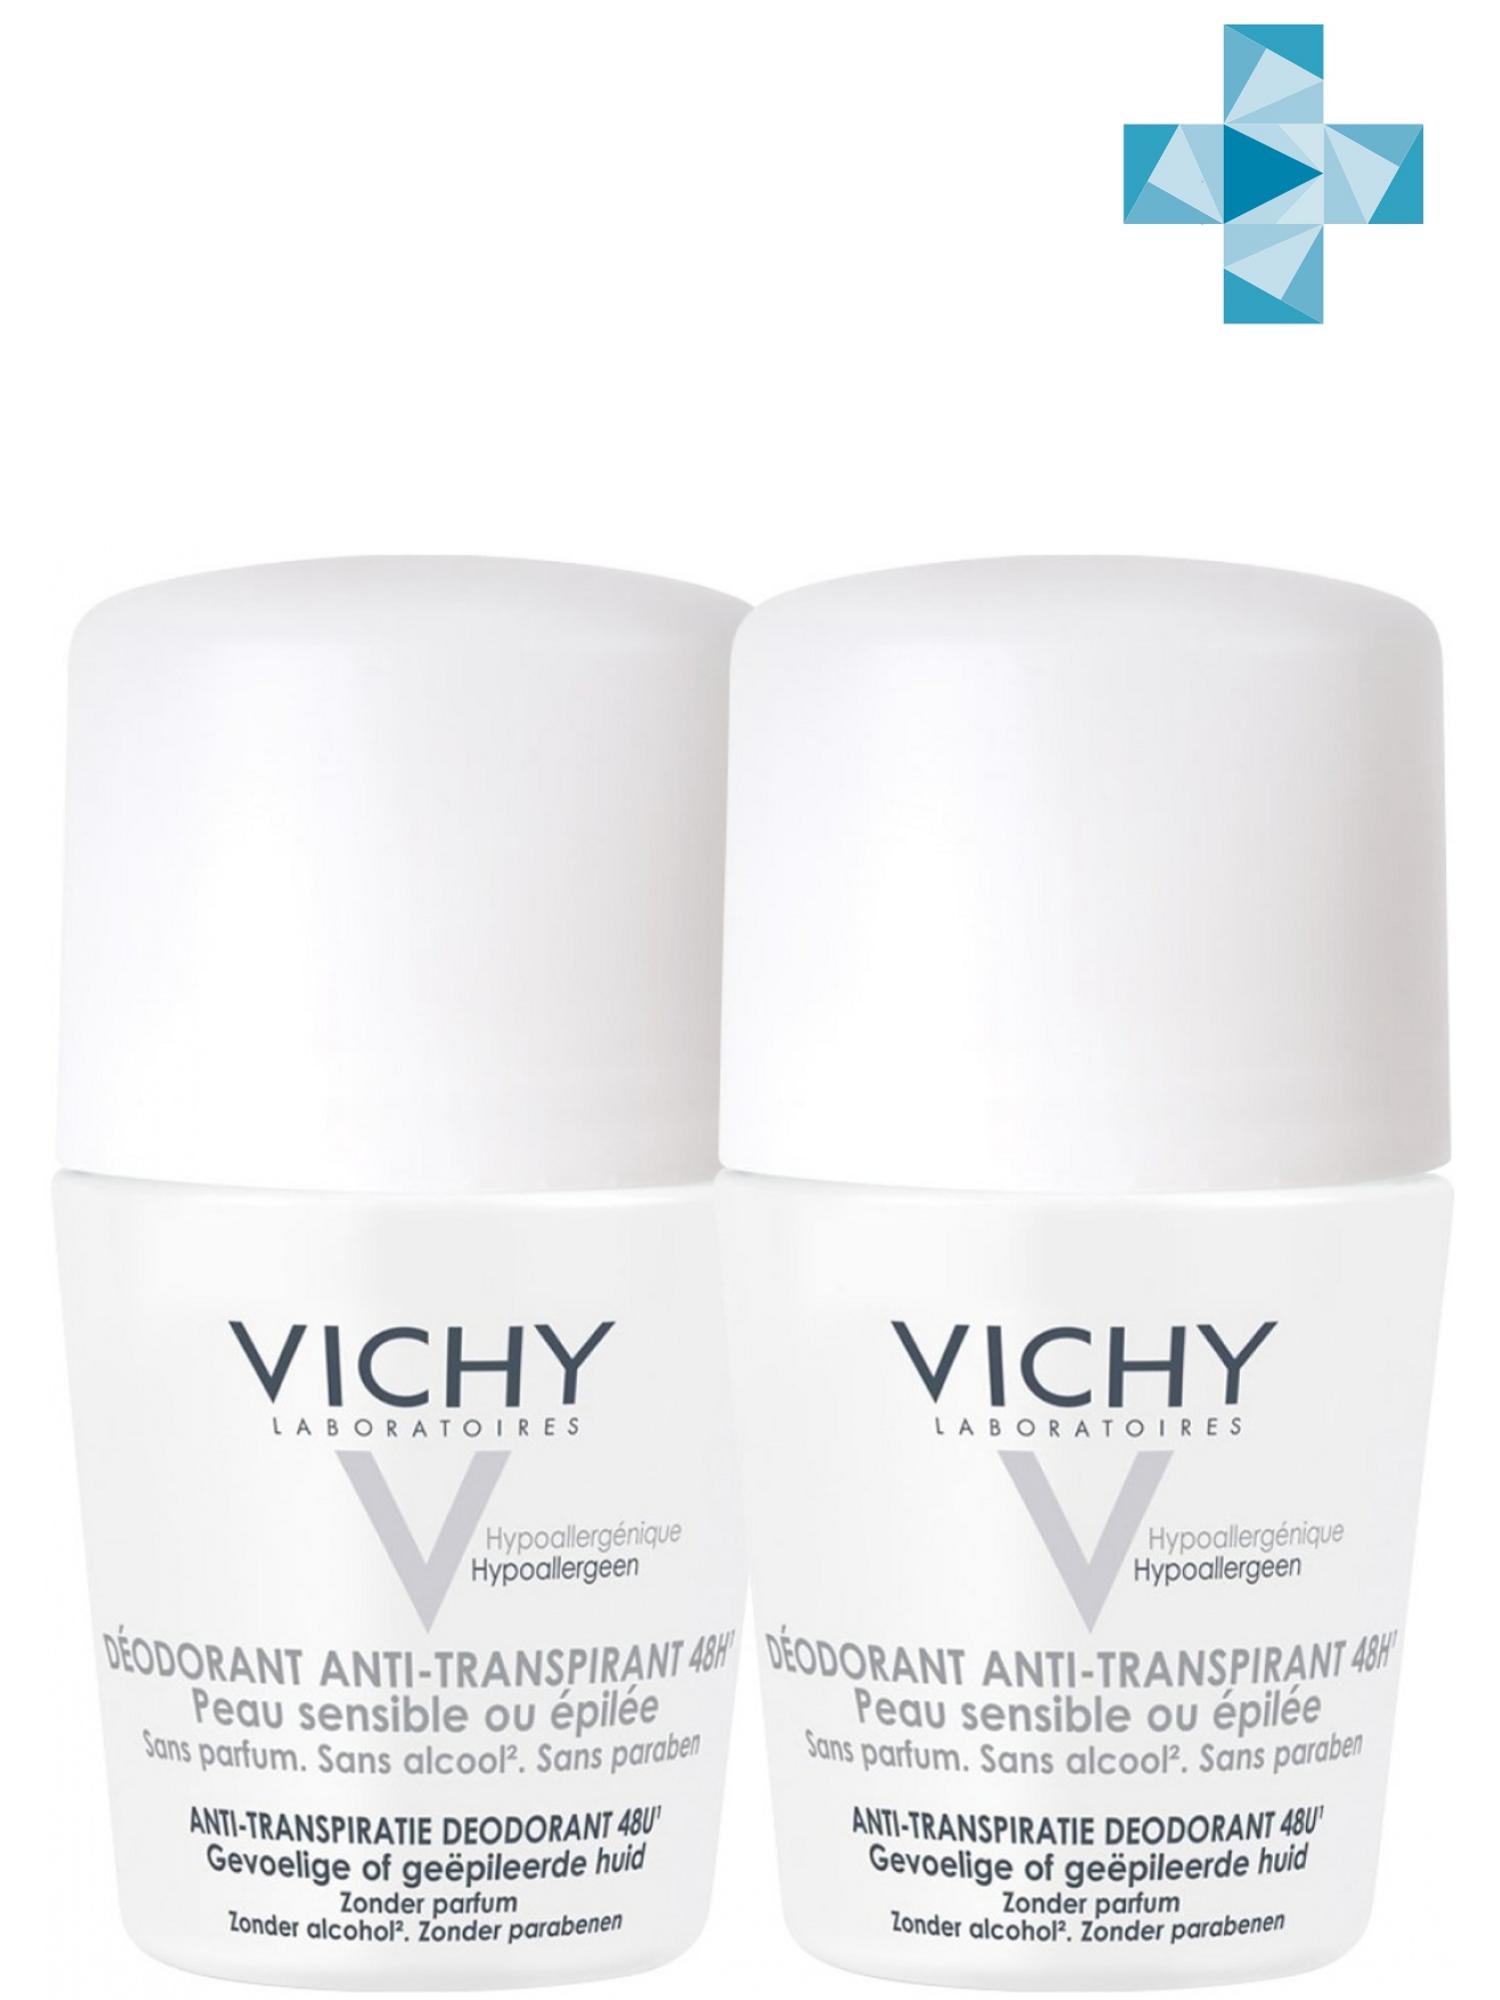 Vichy Комплект Дезодорант-шарик 48 ч для чувствительной кожи 2 шт х 50 мл (Vichy, Deodorant) vichy комплект дезодорант аэрозоль регулирующий избыточное потоотделение 48 часов 2 х 125 мл vichy deodorant